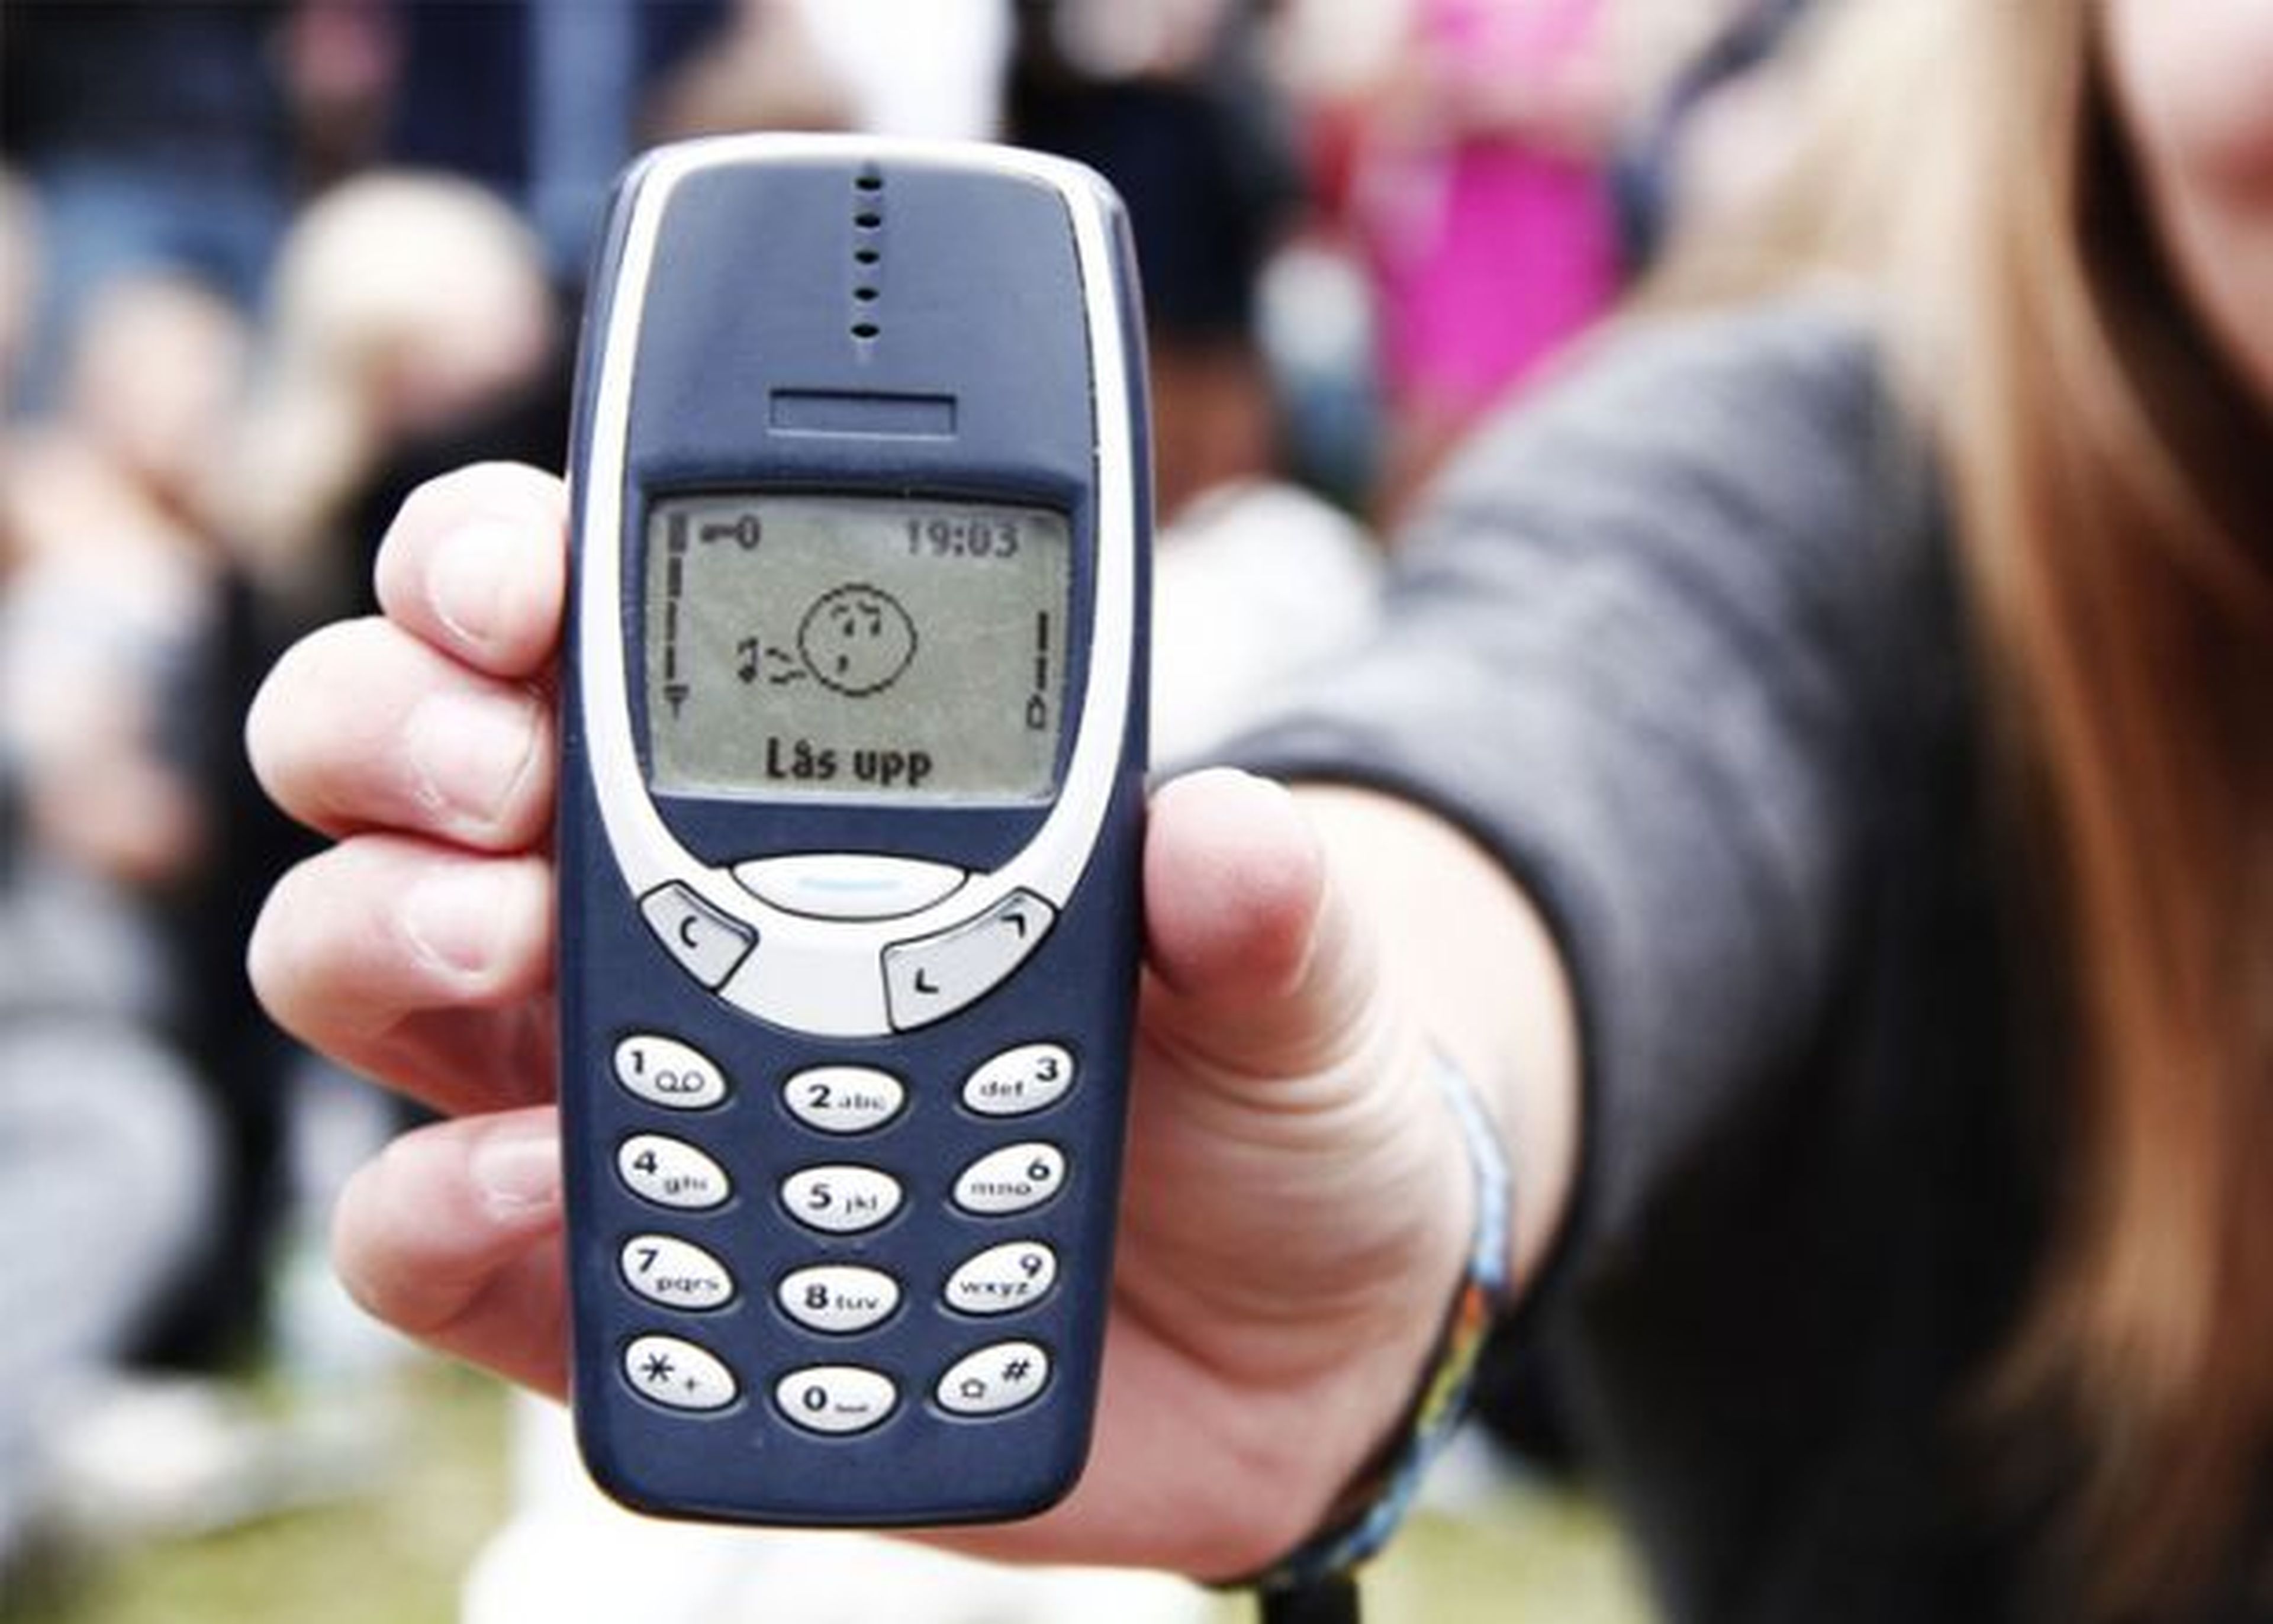 Lo último sobre el Nokia 3310: pantalla a color y diseño personalizable